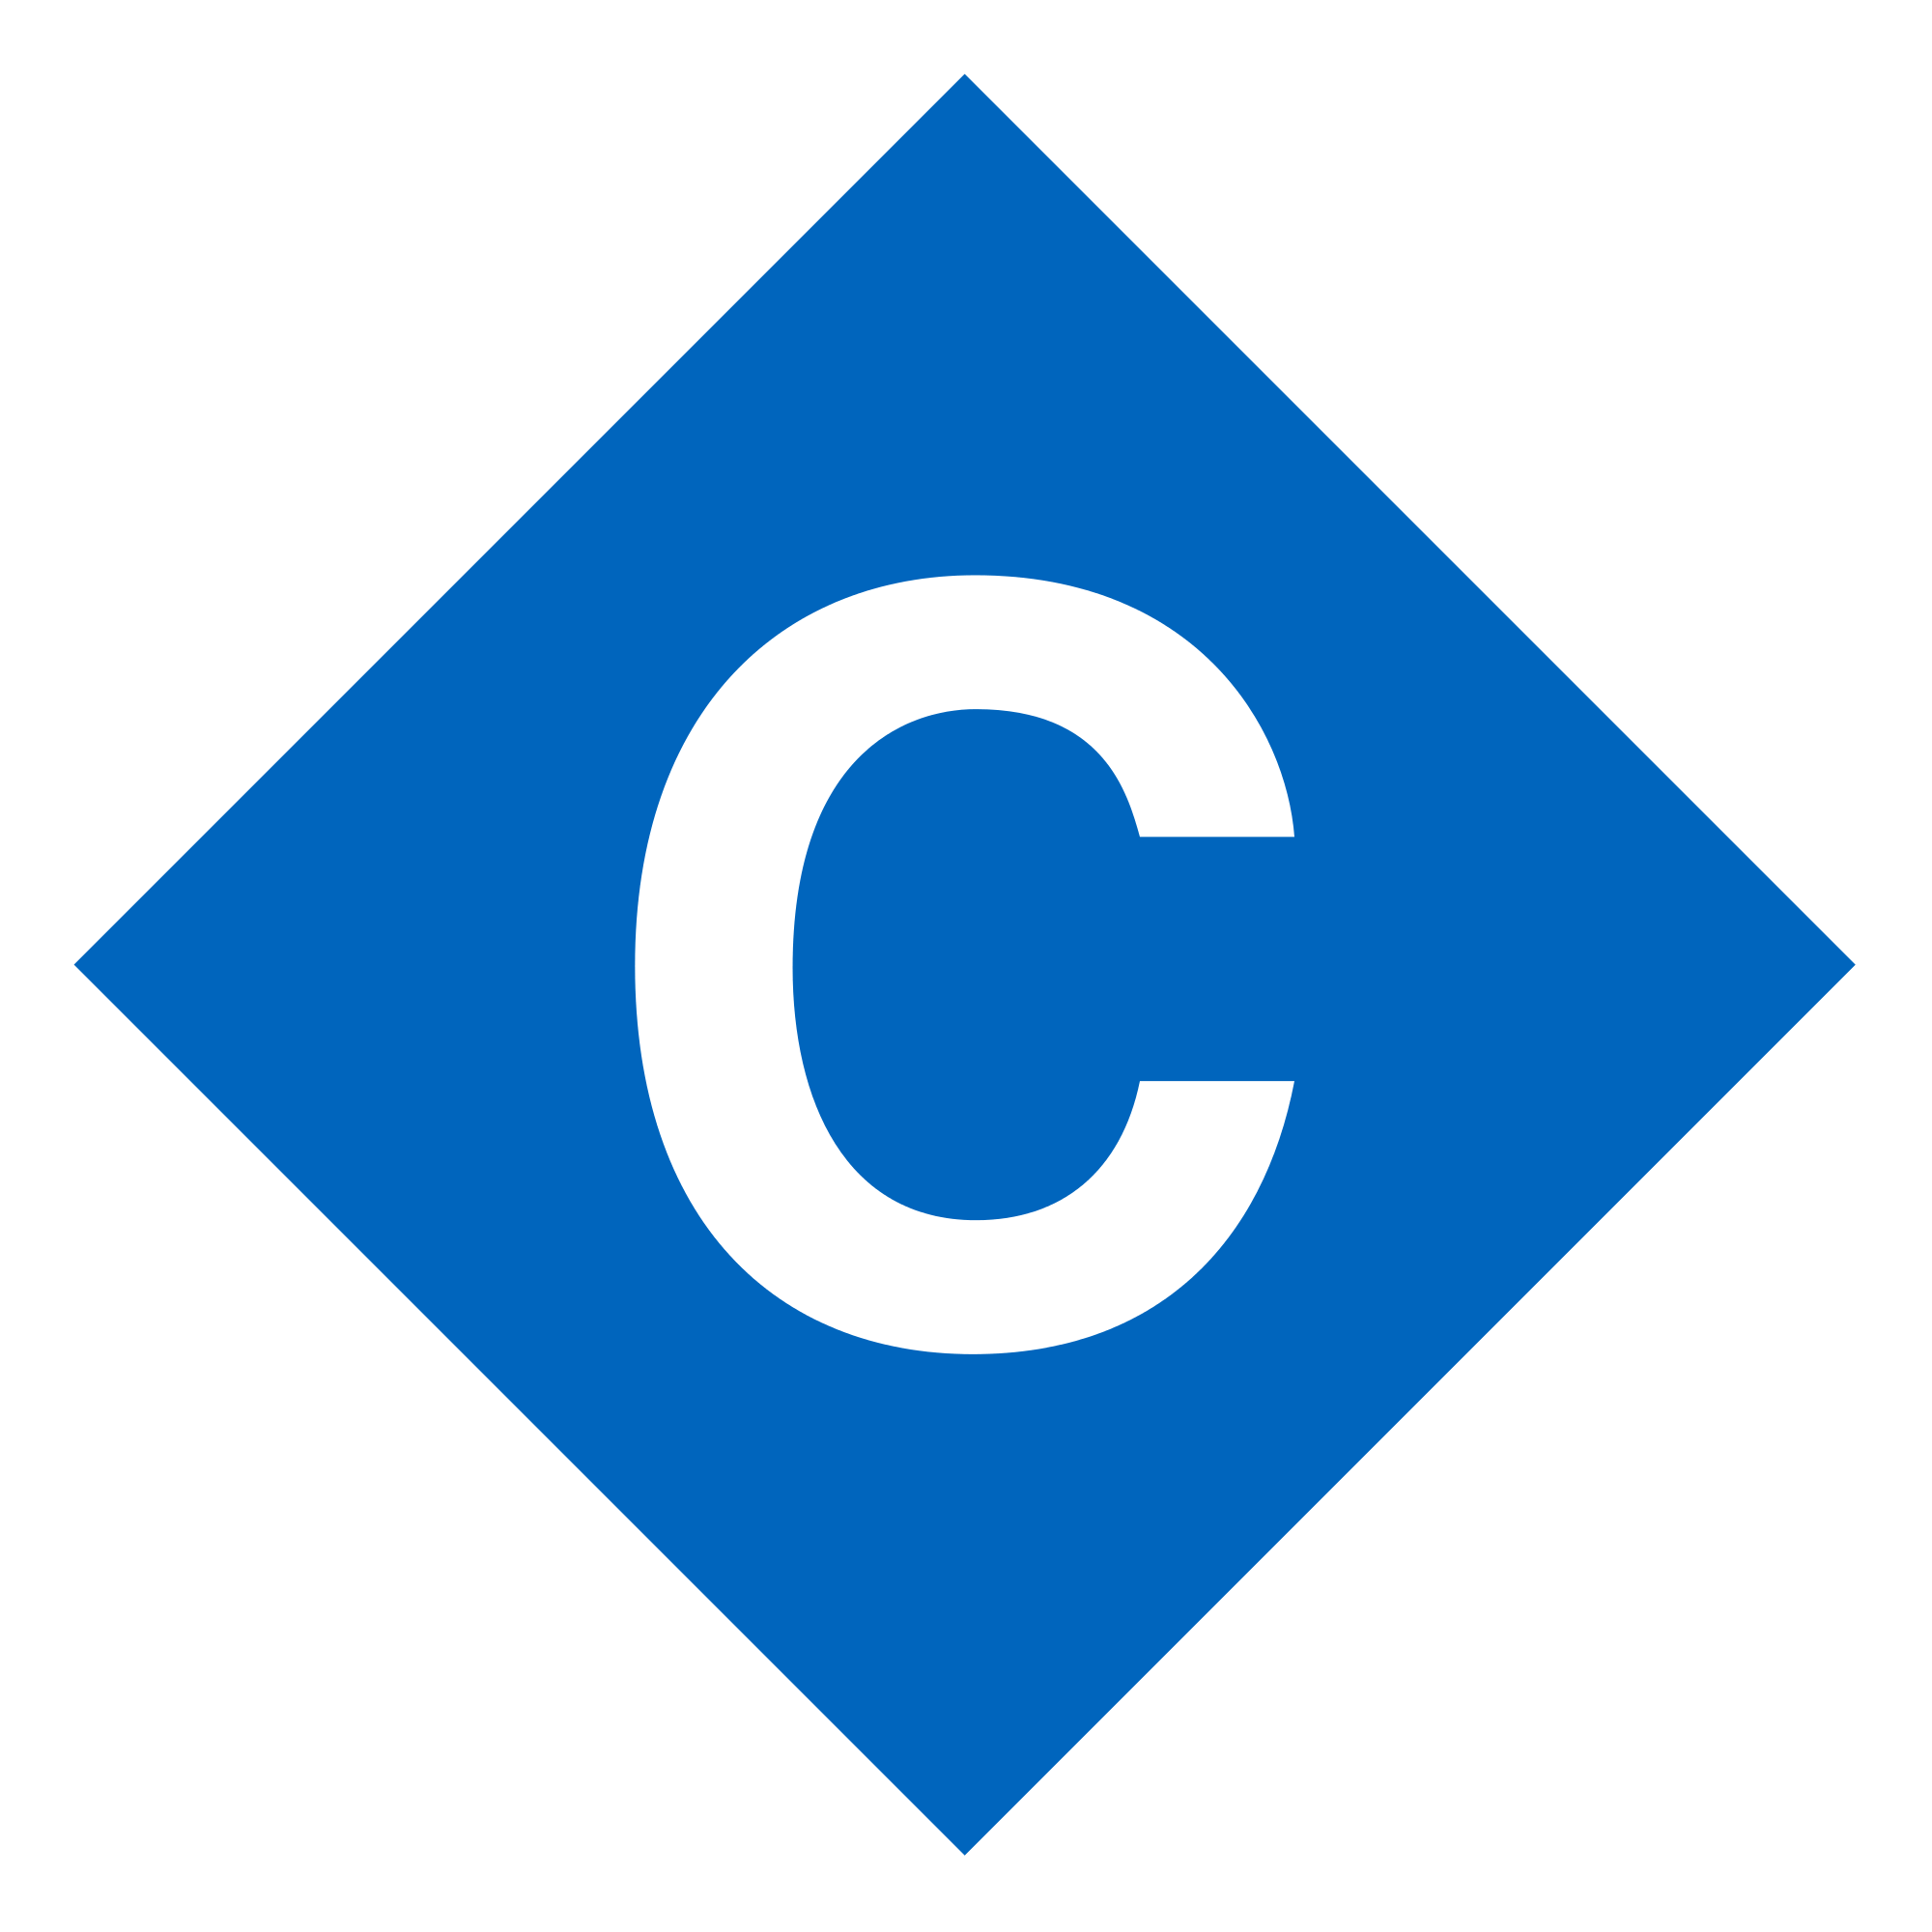 C in Diamond Logo - File:C Train - diamond (pre-1987).svg - Wikimedia Commons